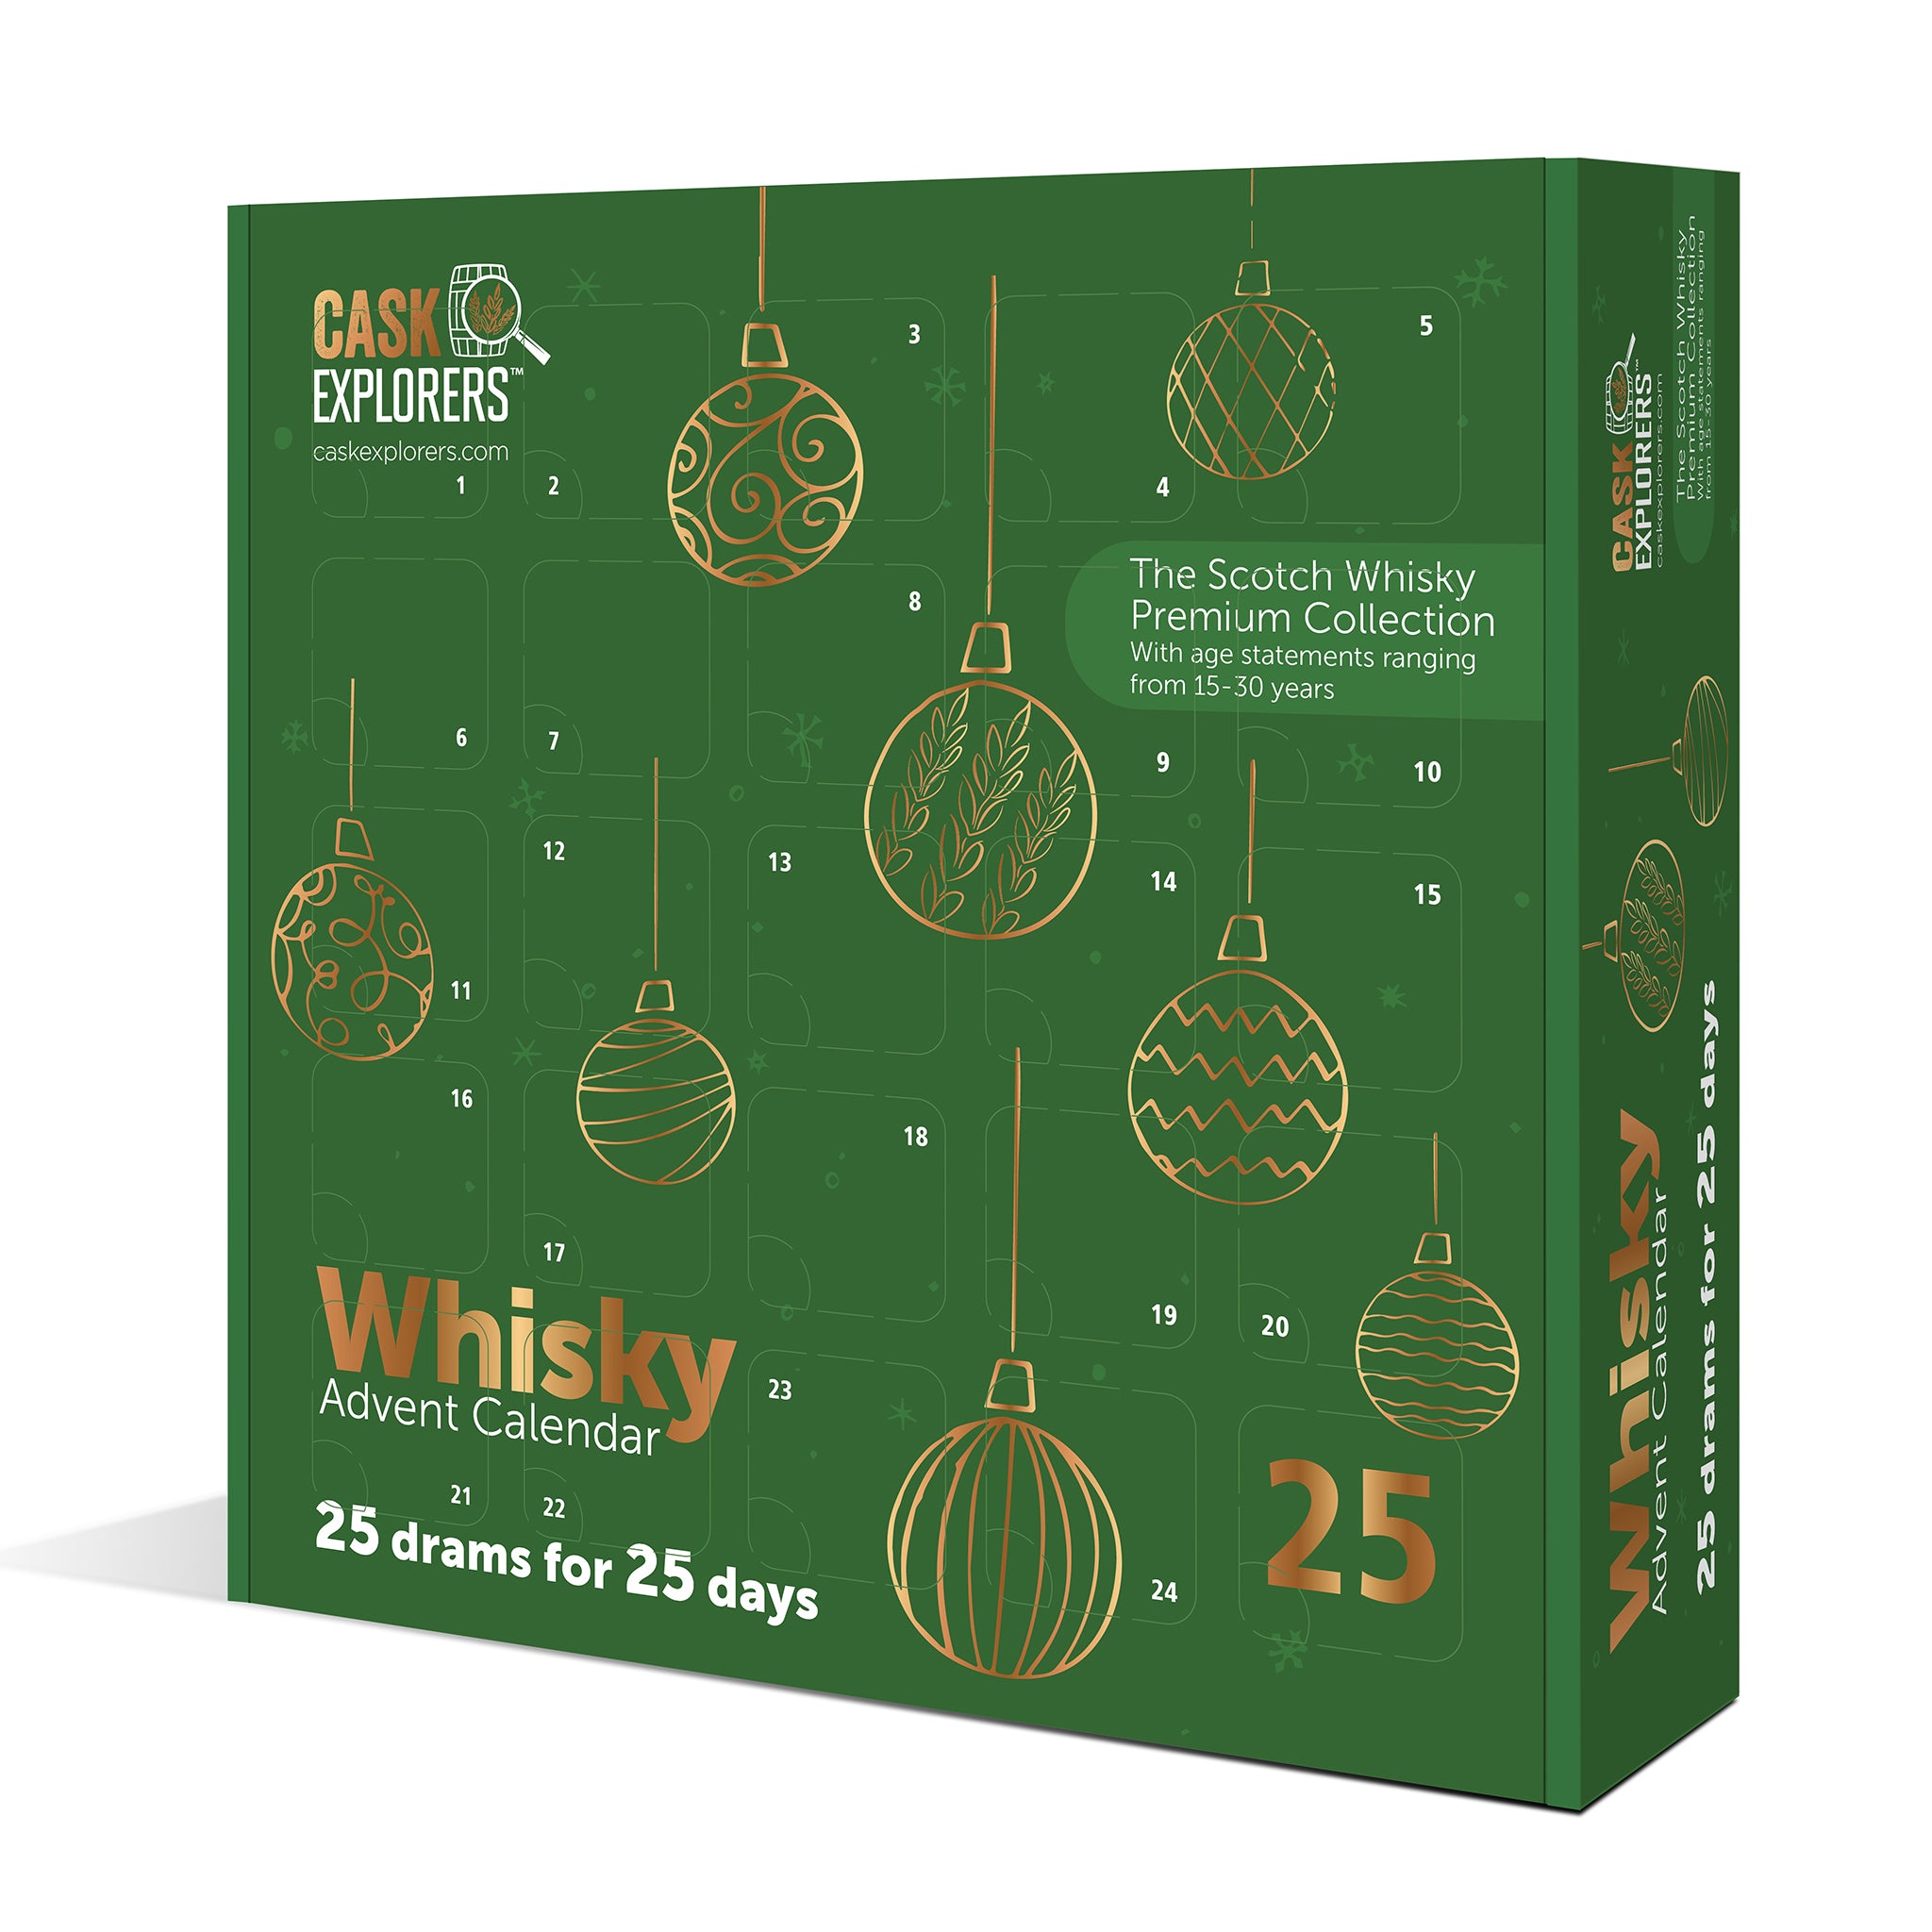 Cask Explorers Scotch Whisky Premium Collection 25x3cl  Advent Calendar